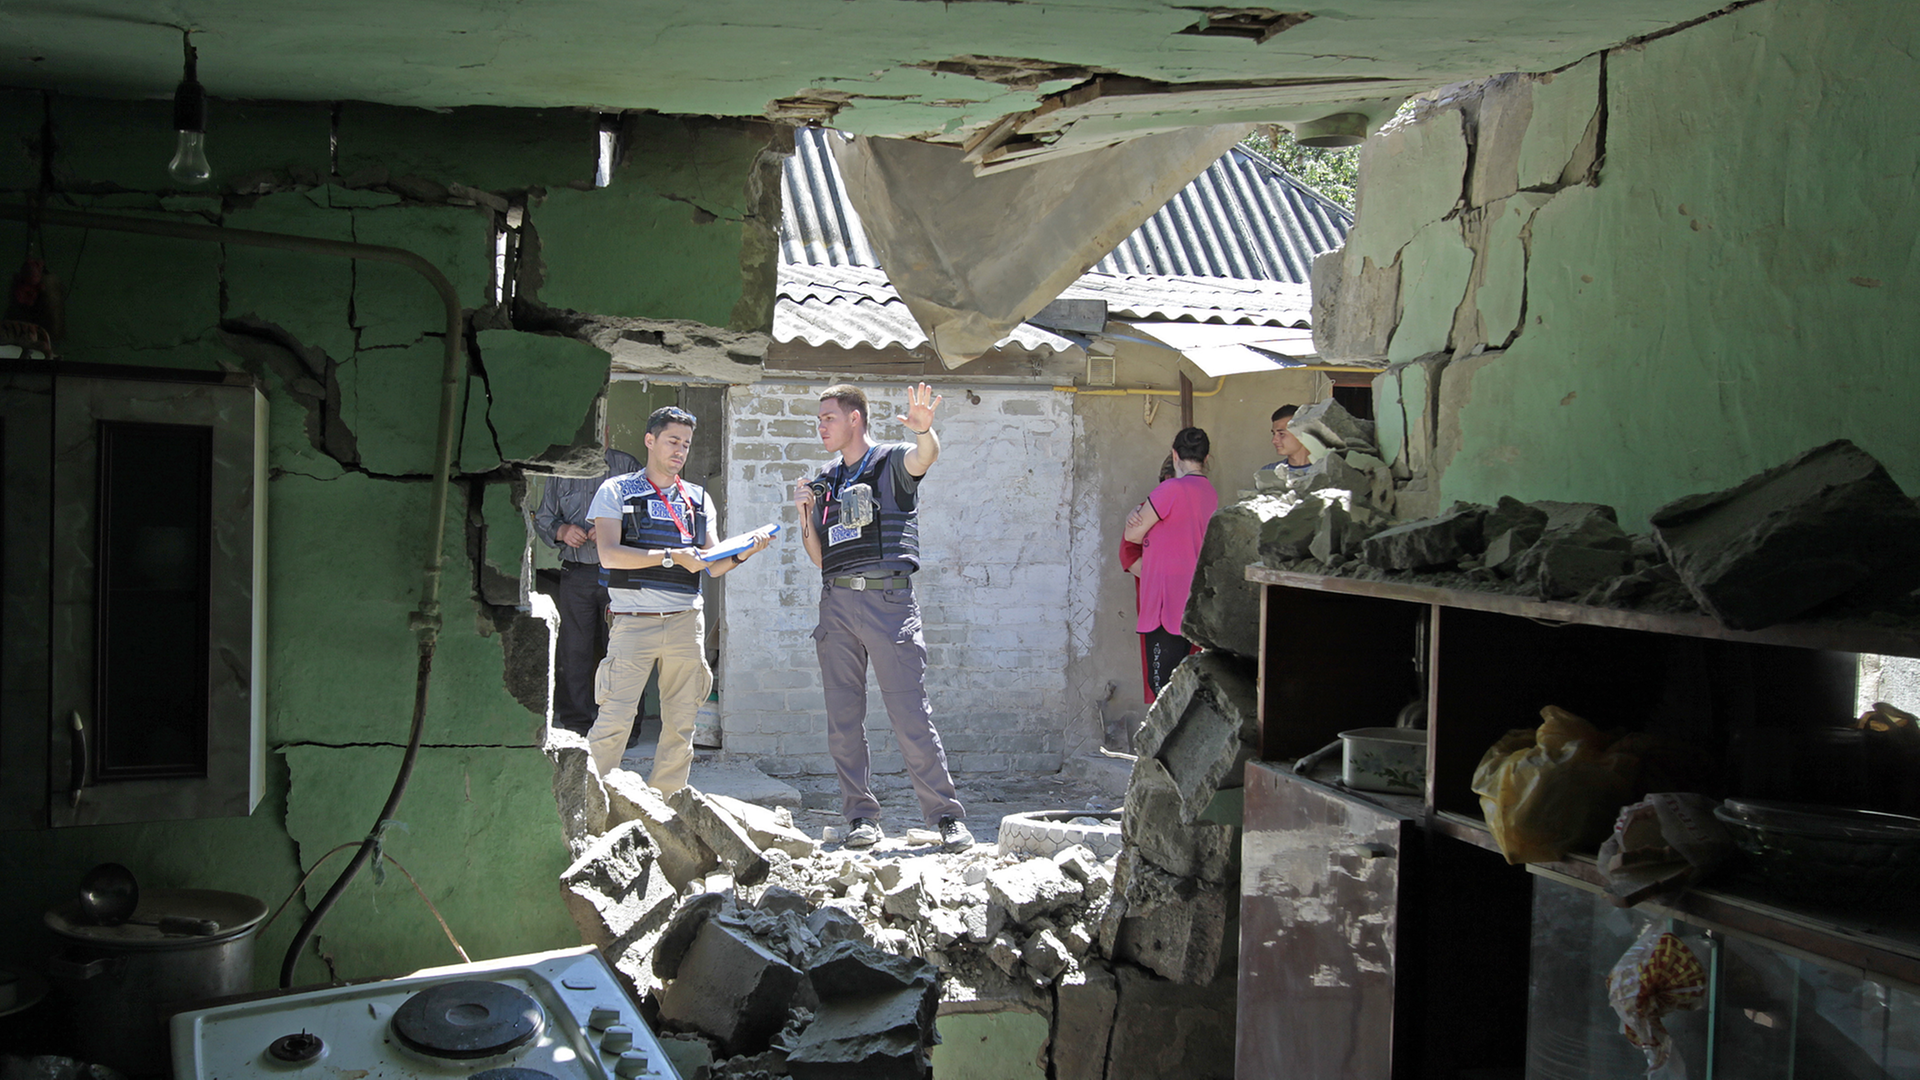 OSZE-Beobachter protokollieren die Schäden nach einem nächtlichen Bombenangriff in der ostukrainischen Region Donezk